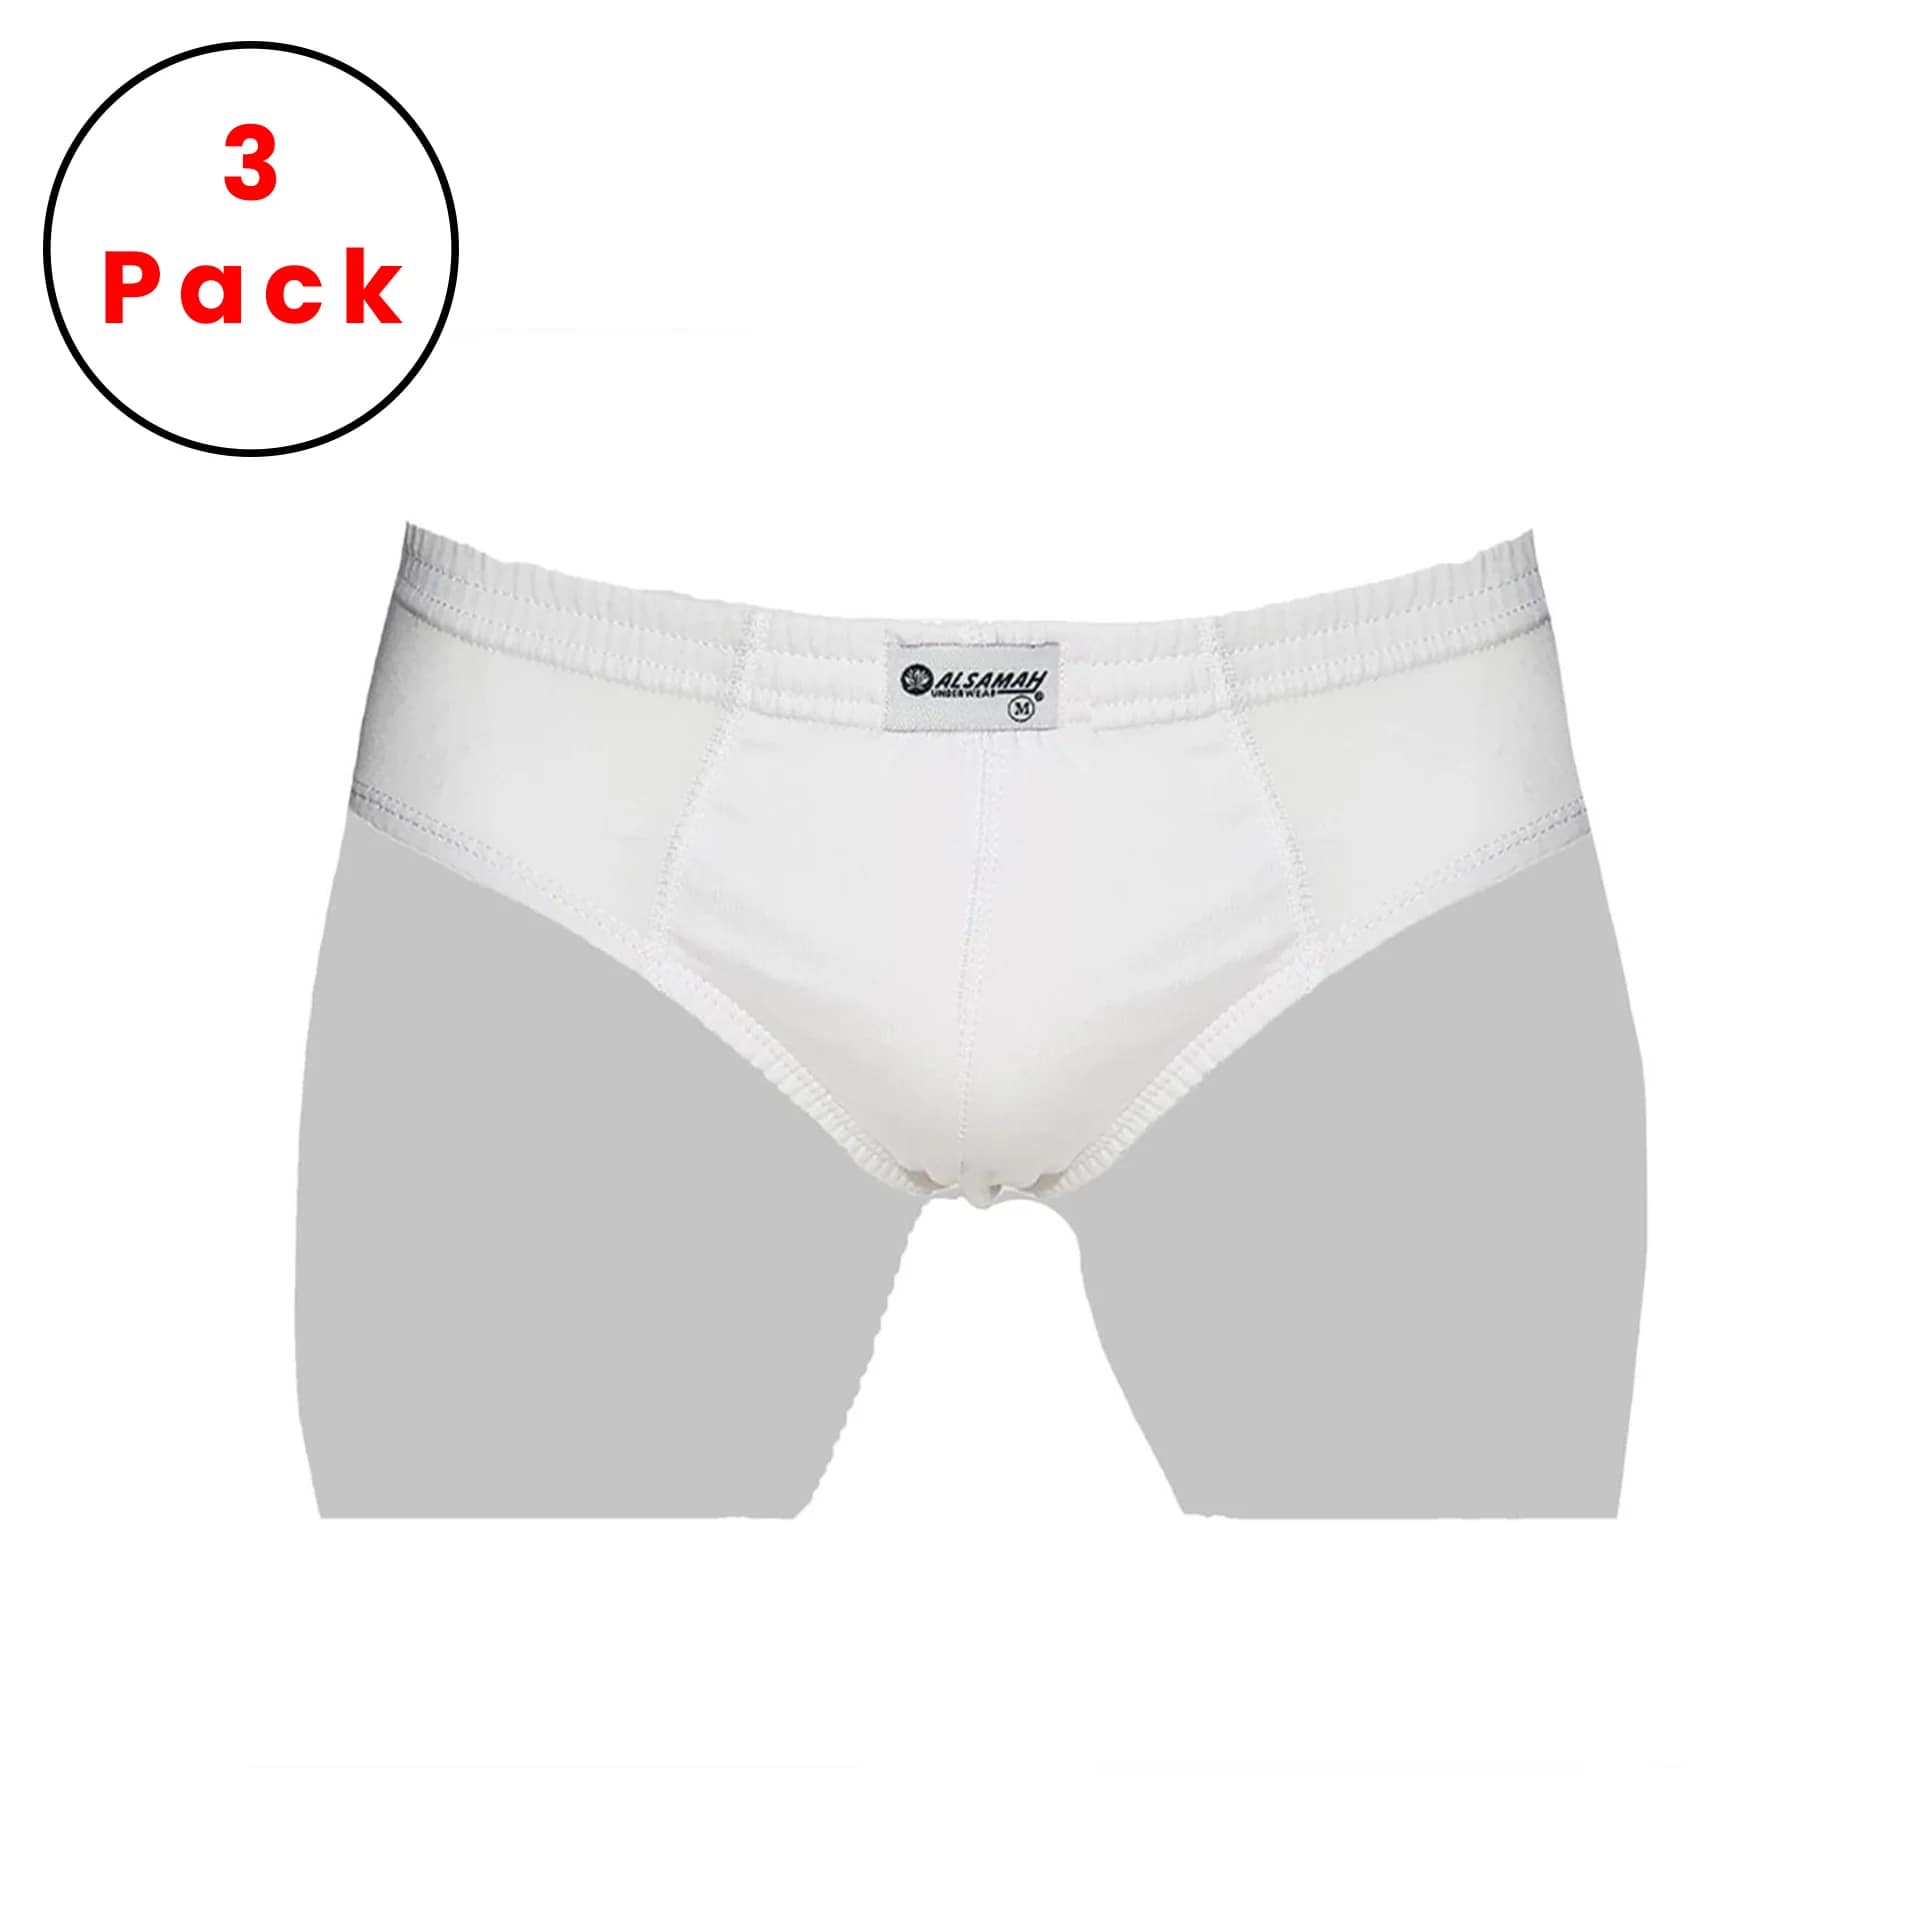 3-pack, 100% Cotton Men's Slip White color from al samah